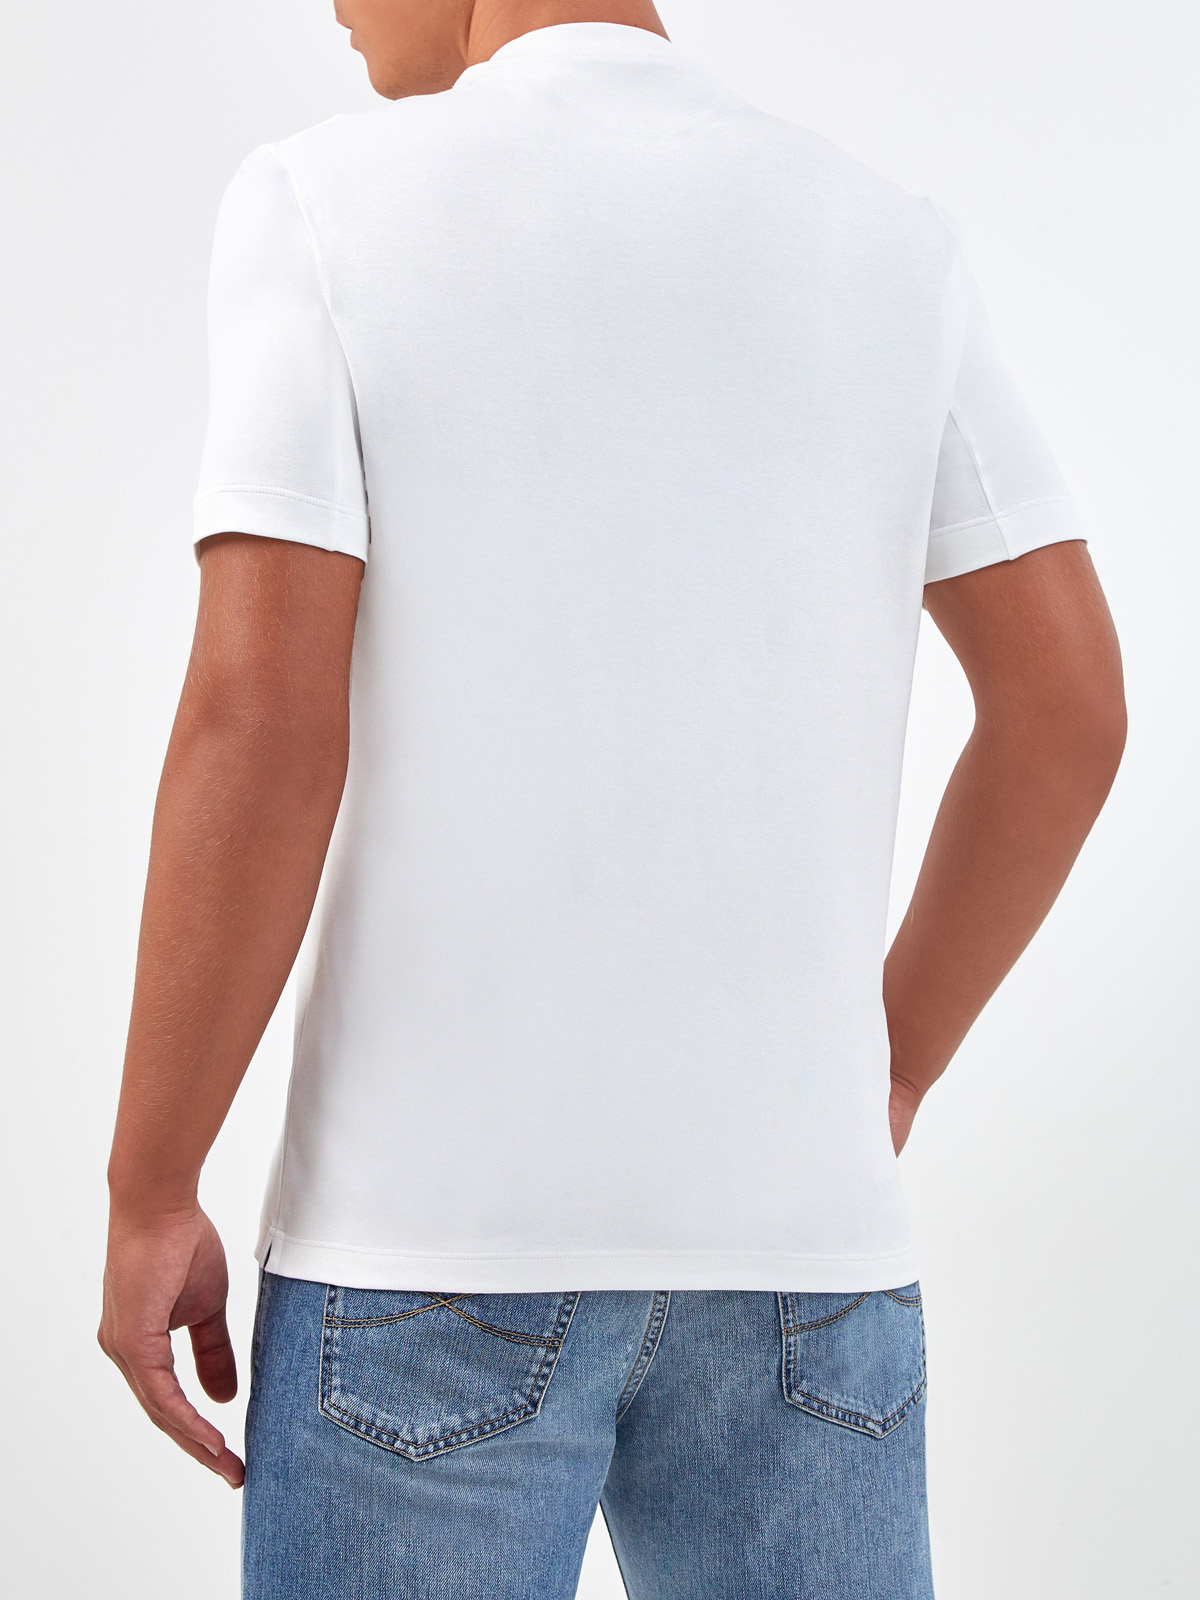 Белая футболка в стиле минимализм из гладкого джерси BRUNELLO CUCINELLI, цвет белый, размер 46;52;54;48 - фото 4